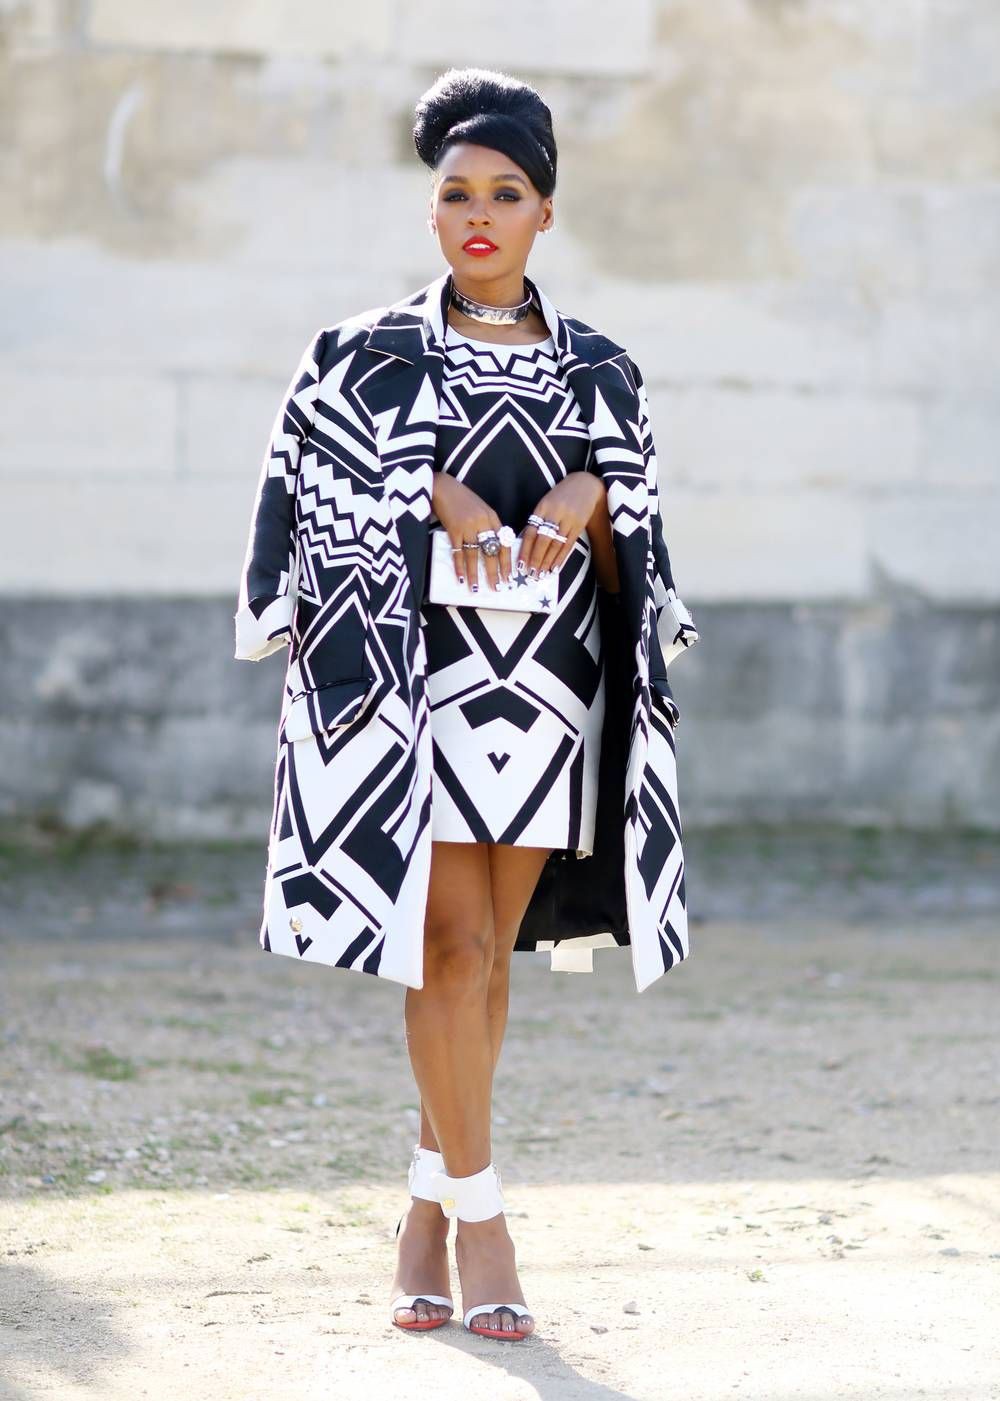 vestido ankara blanco y negro: vestidos africanos,  Fotografía de archivo,  Alta costura,  Vestidos Kitenge  